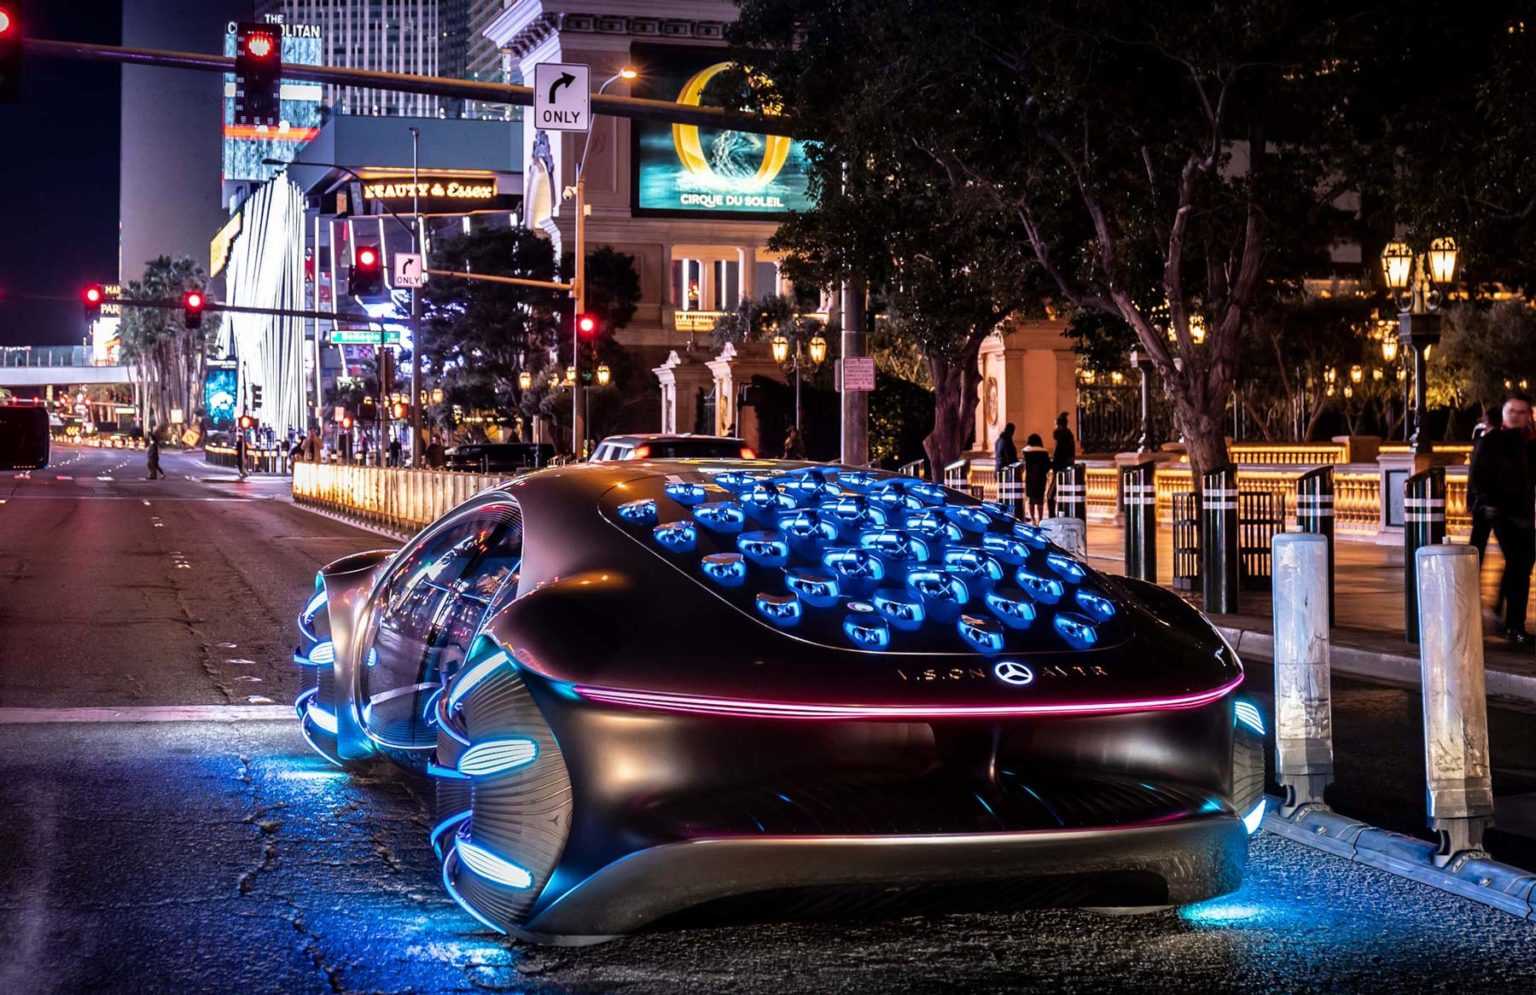 Mercedes Benz вывел на дорожные тесты уникальную машину – прототип авто будущего VISION AVTR или просто АВАТАР